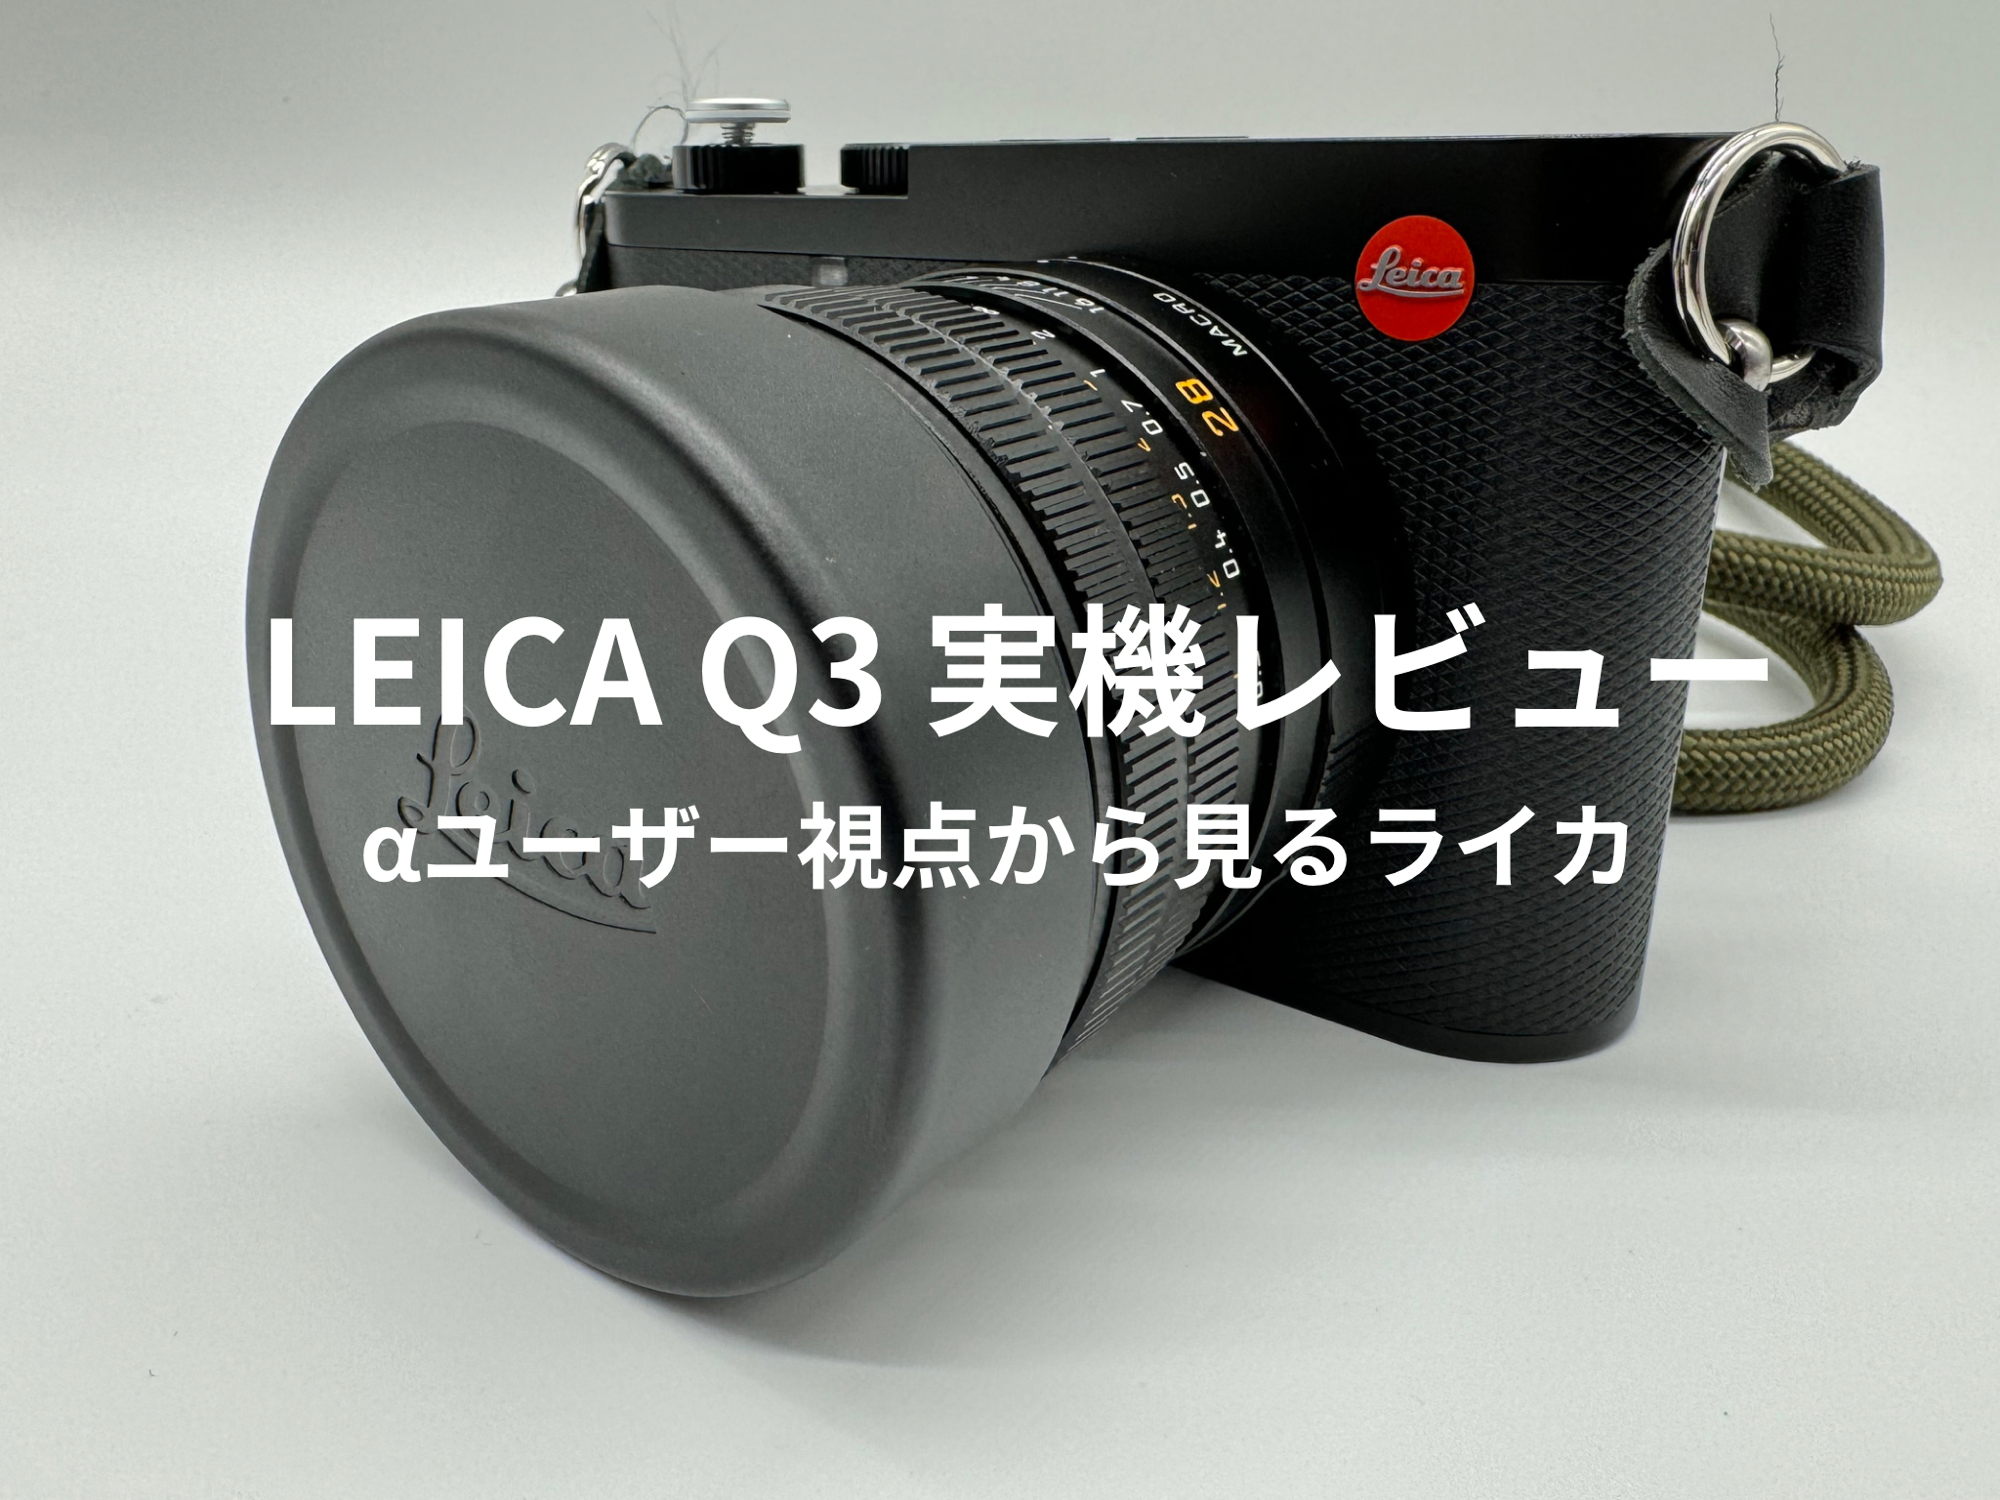 ライカQ3 レンズフード シルバー 試しただけ - デジタルカメラ